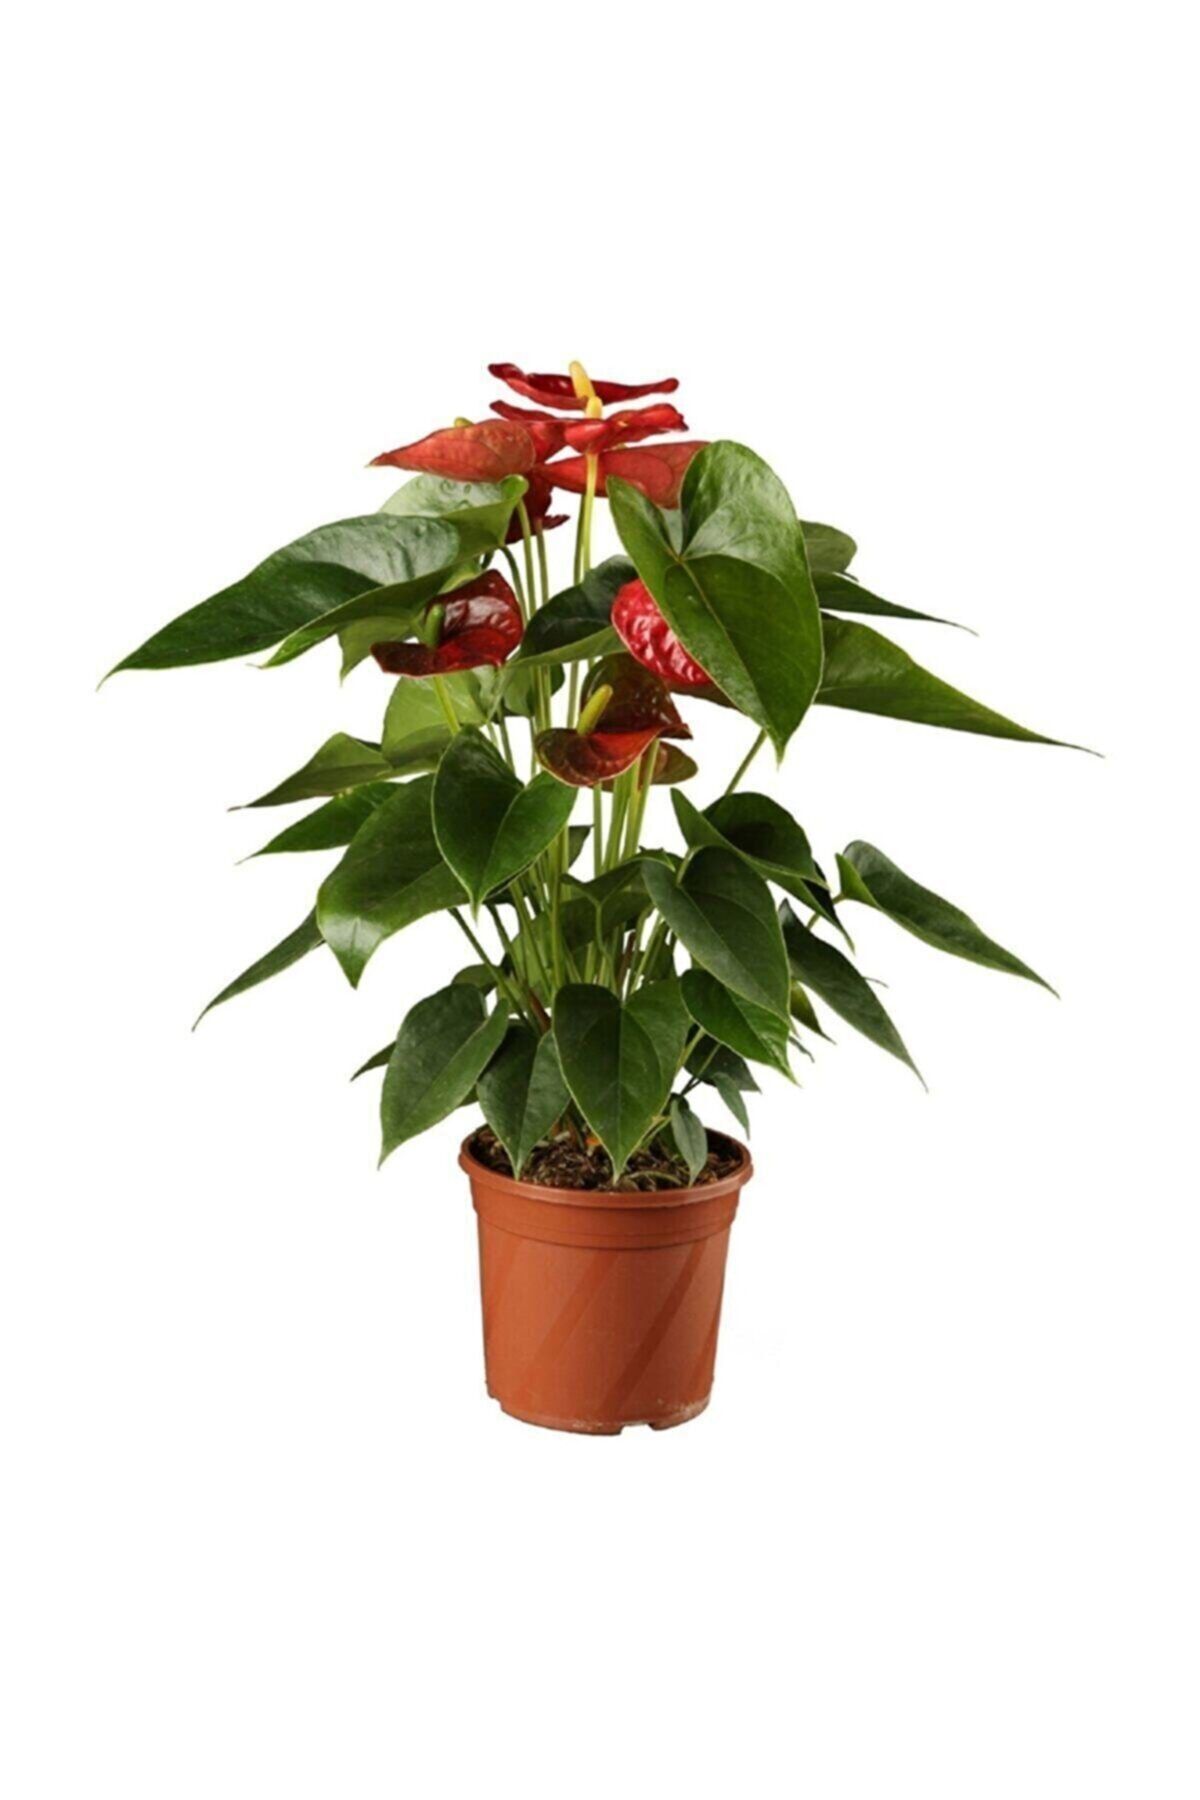 Genel Markalar Antoryum Çiçeği Filamingo Çiçeği Anthurium Red Winner Ev Bitkisi Ofis Bitkisi Salon Bitkisi